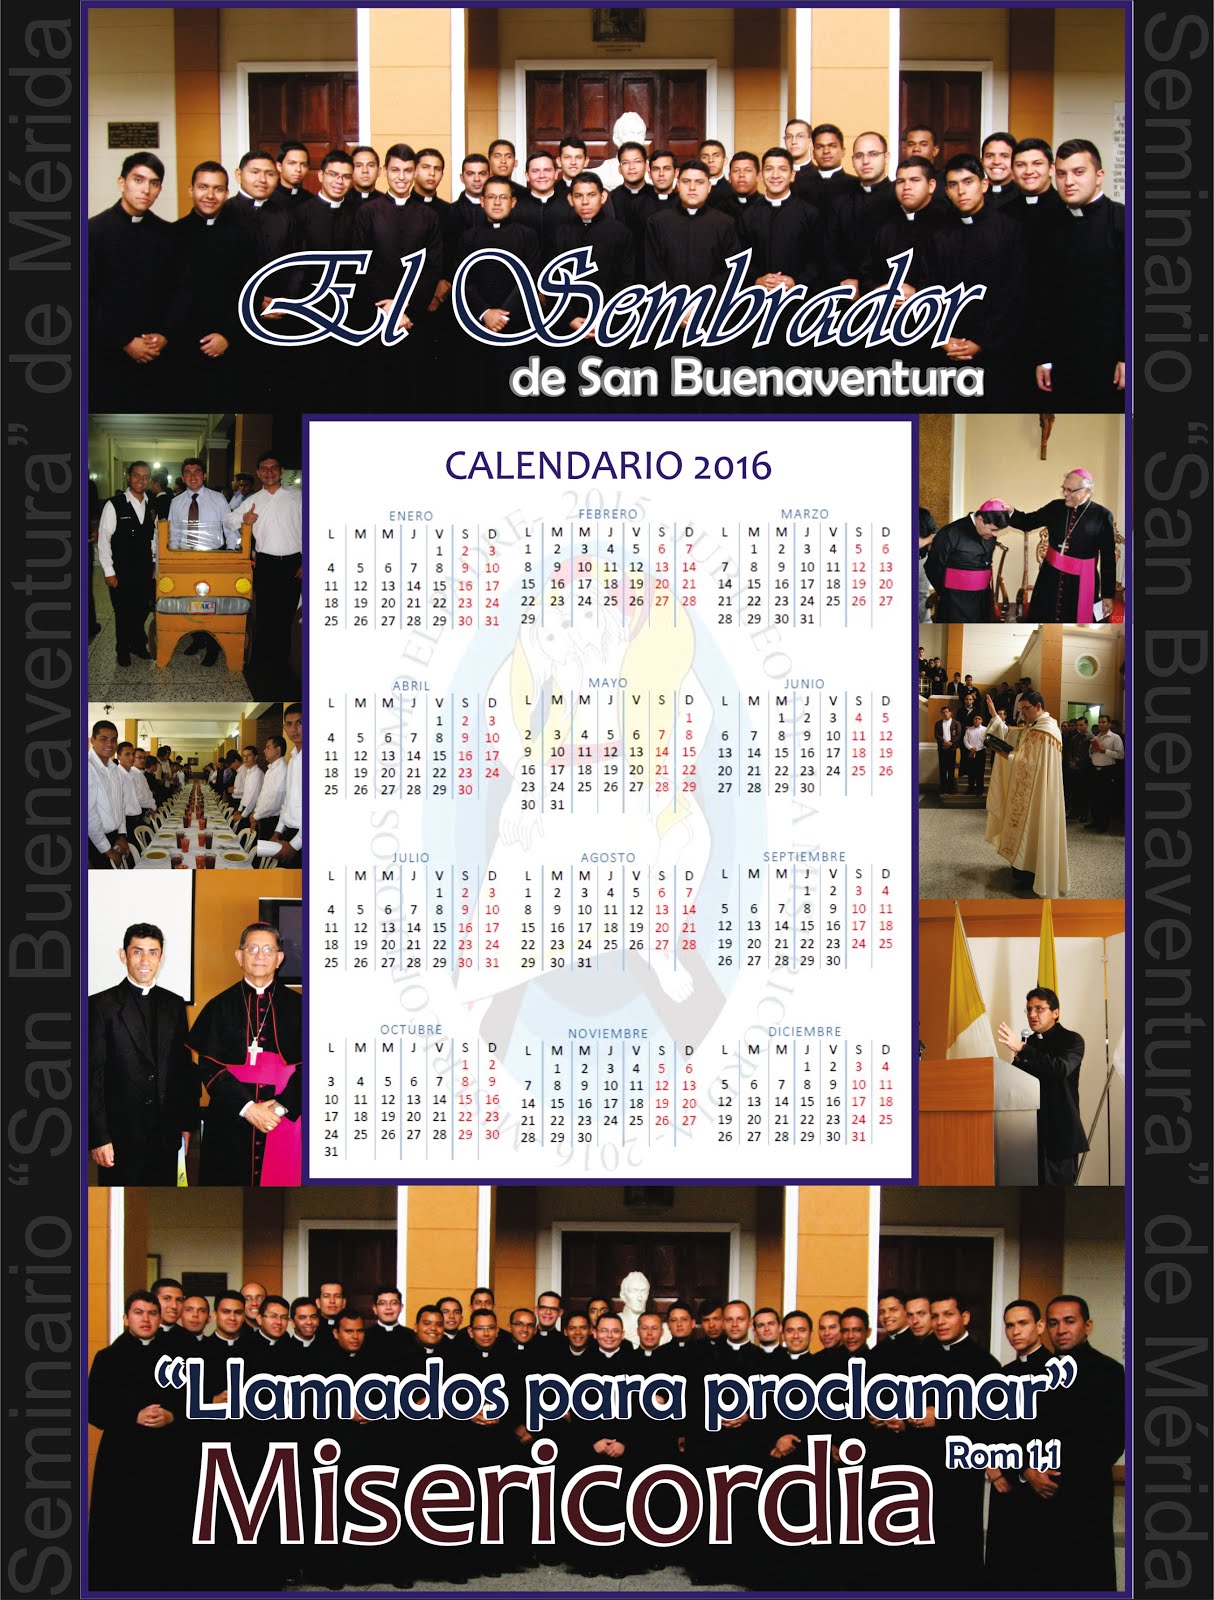 Calendario 2016 "Seminario San Buenaventura"